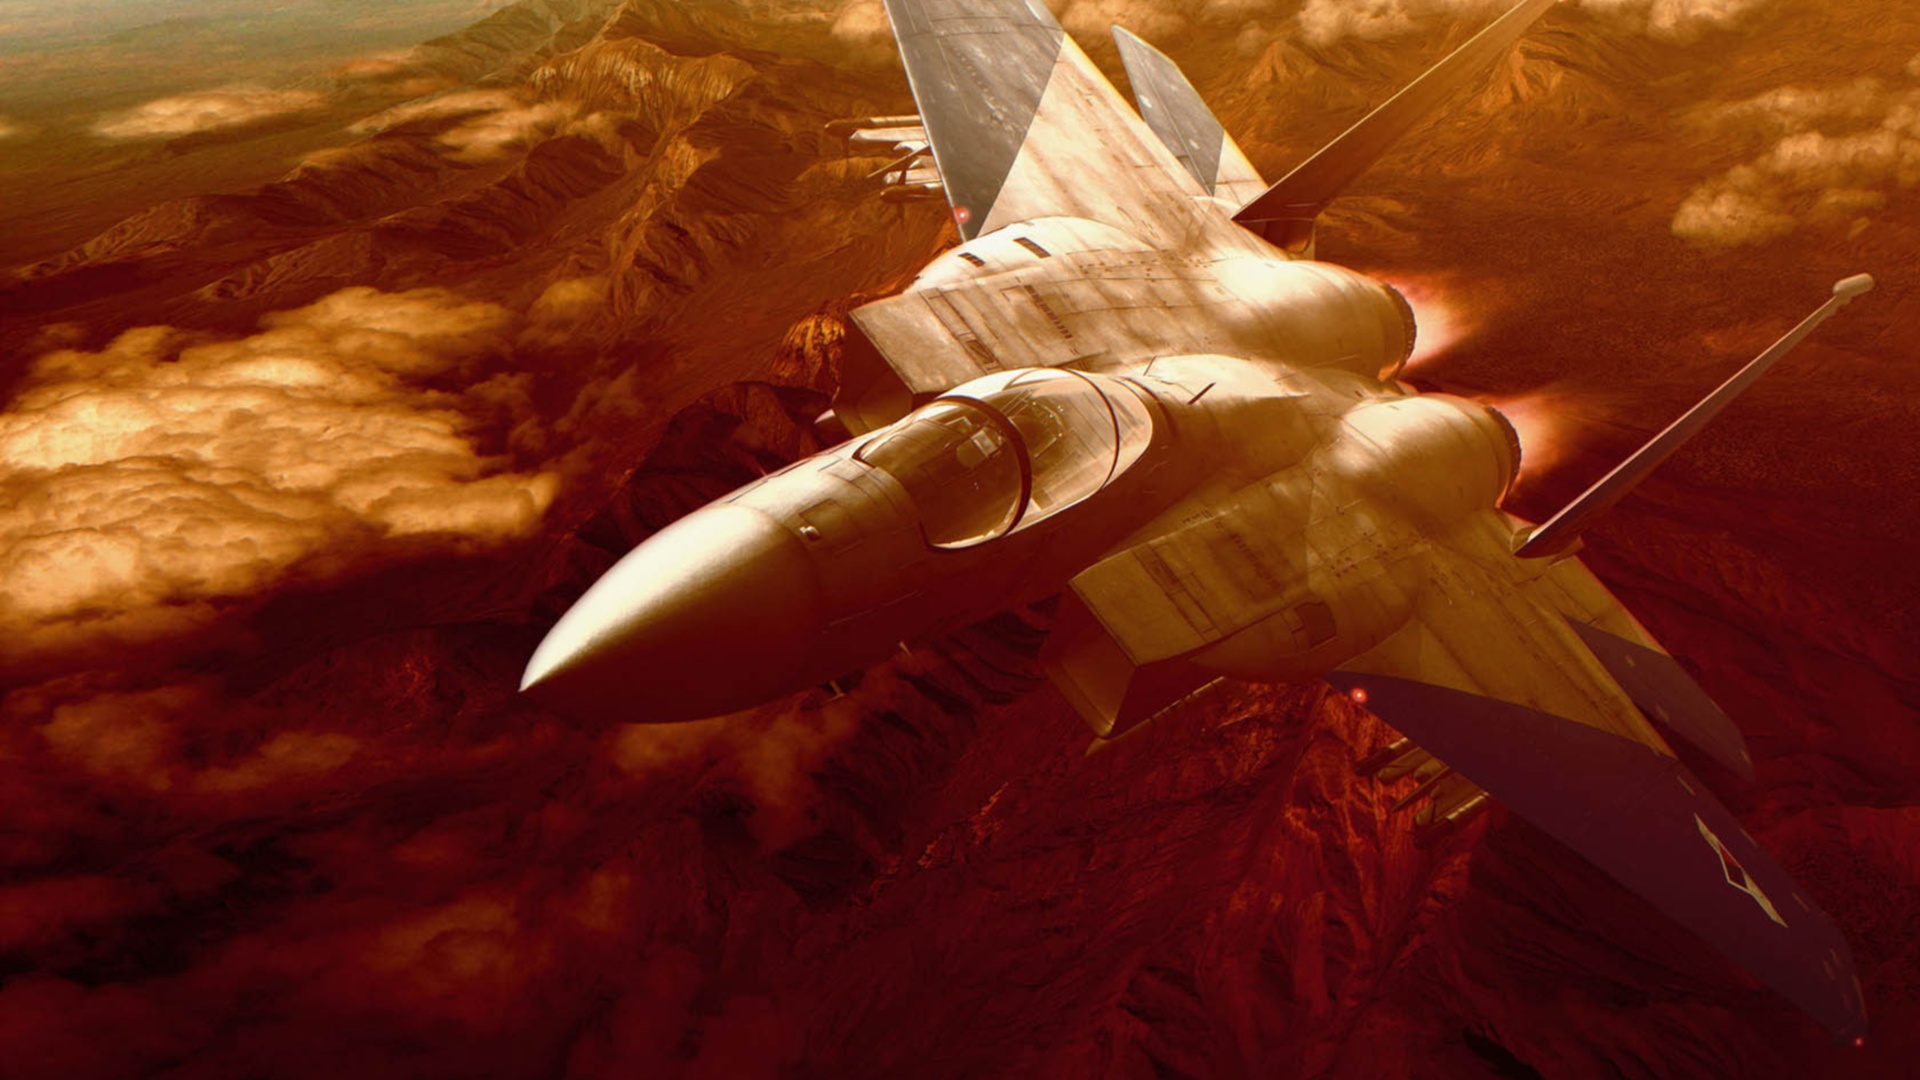 Video Game Ace Combat Zero: The Belkan War HD Wallpaper Background Image.